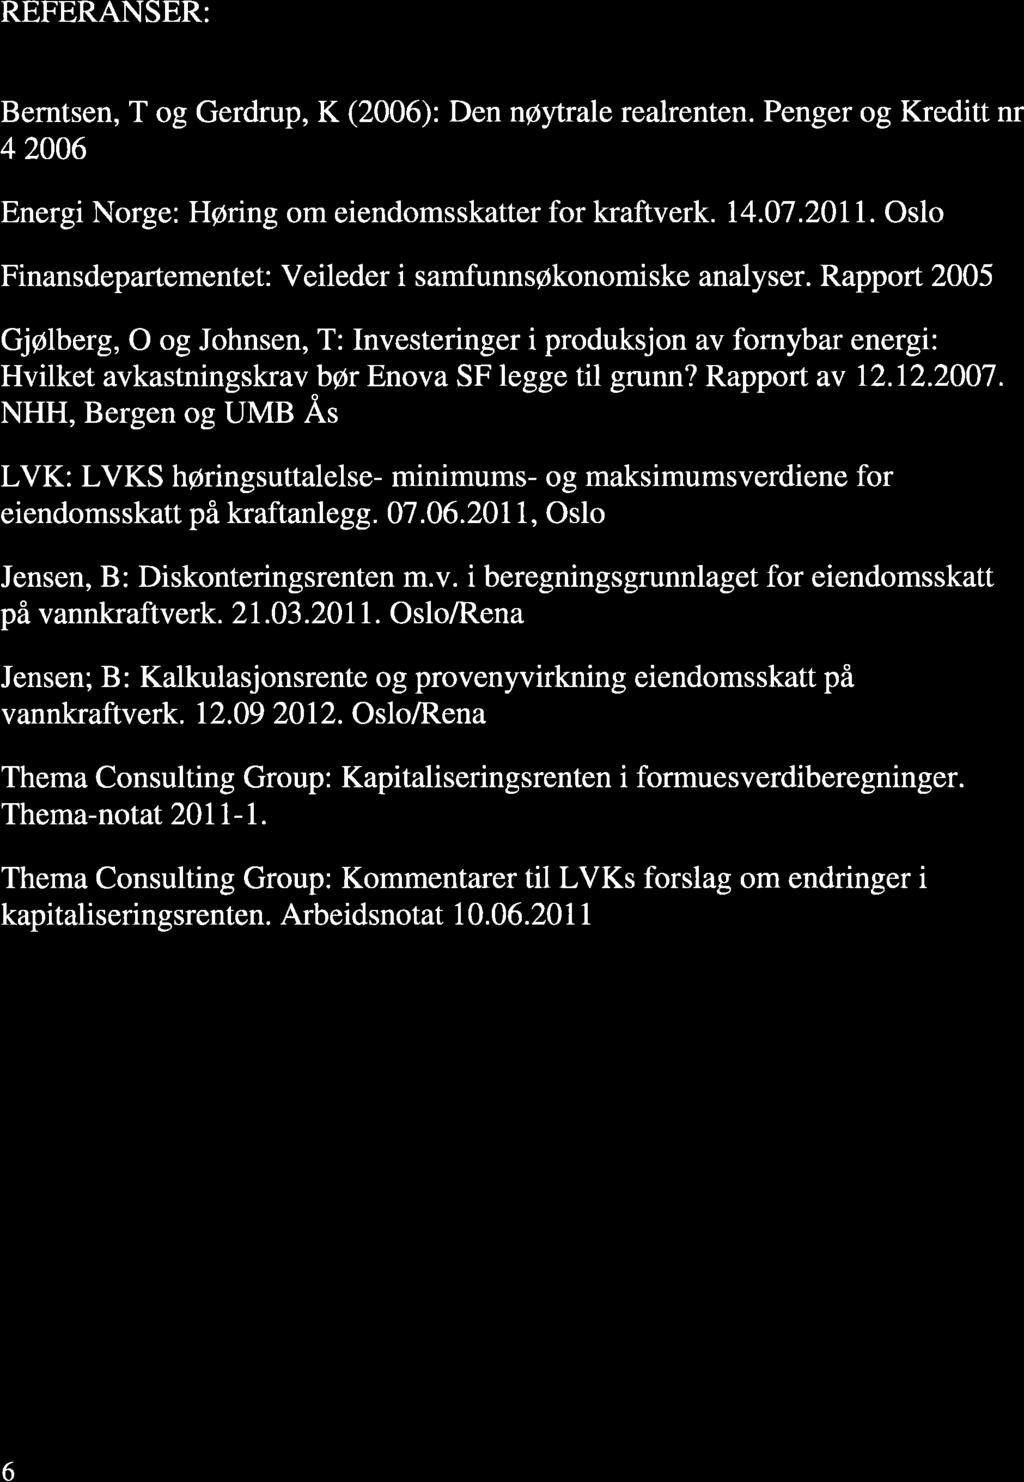 REFERANSER: Berntsen, T og Gerdrup, K (2006): Den n@ytrale realrenten. Penger og Kreditt nr 4 2006 Energi Norge: Hpring om eiendomsskatter for kraftverk. t4.07.2011.